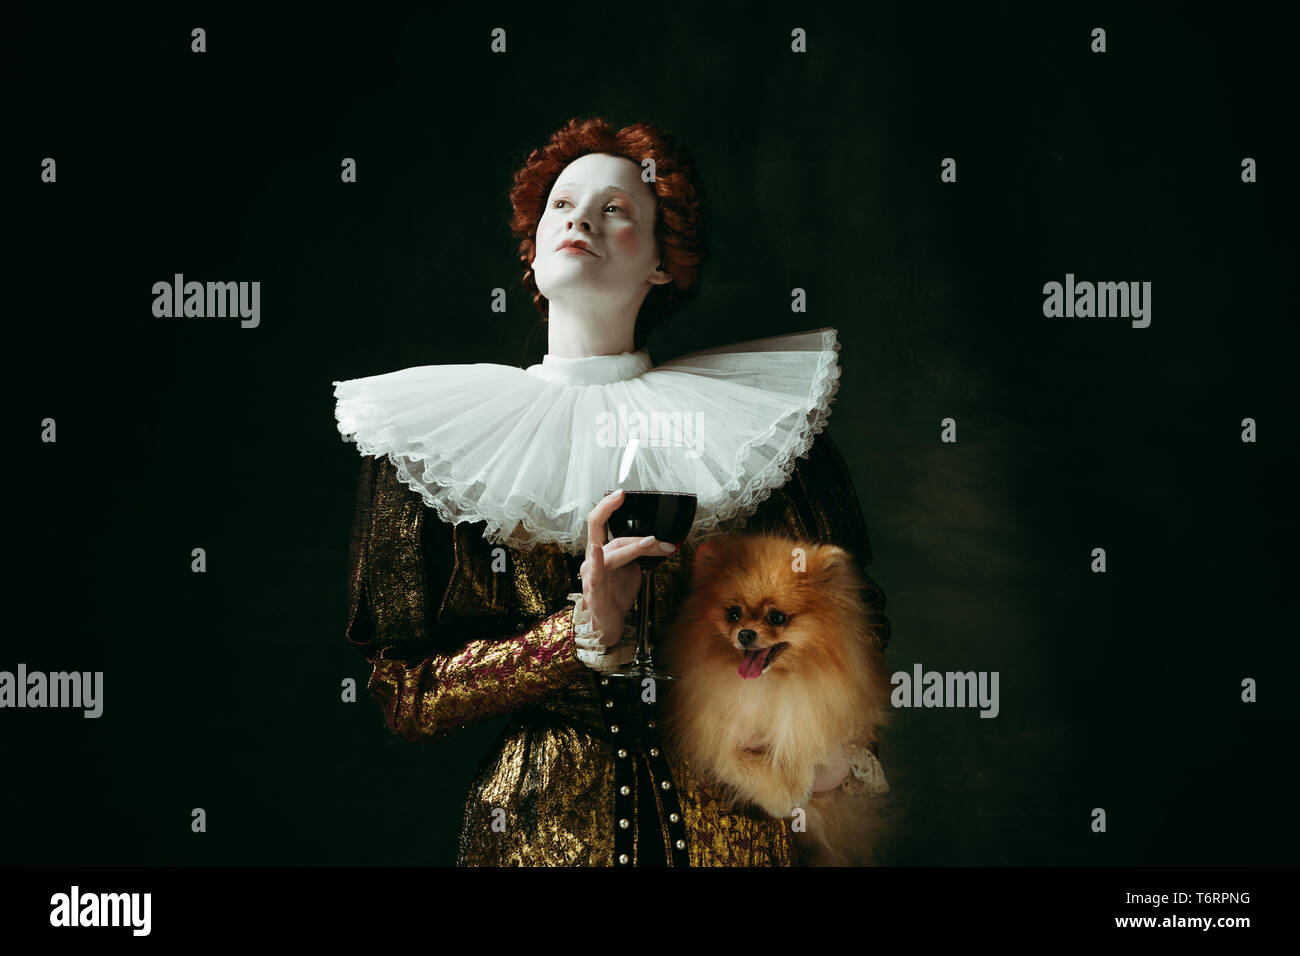 Sentire. Medieval redhead giovane donna in oro di abbigliamento vintage come una duchessa holding cucciolo e vetro con vino rosso su sfondo verde scuro. Concetto di confronto delle epoche, modernità, rinascimentale. Foto Stock